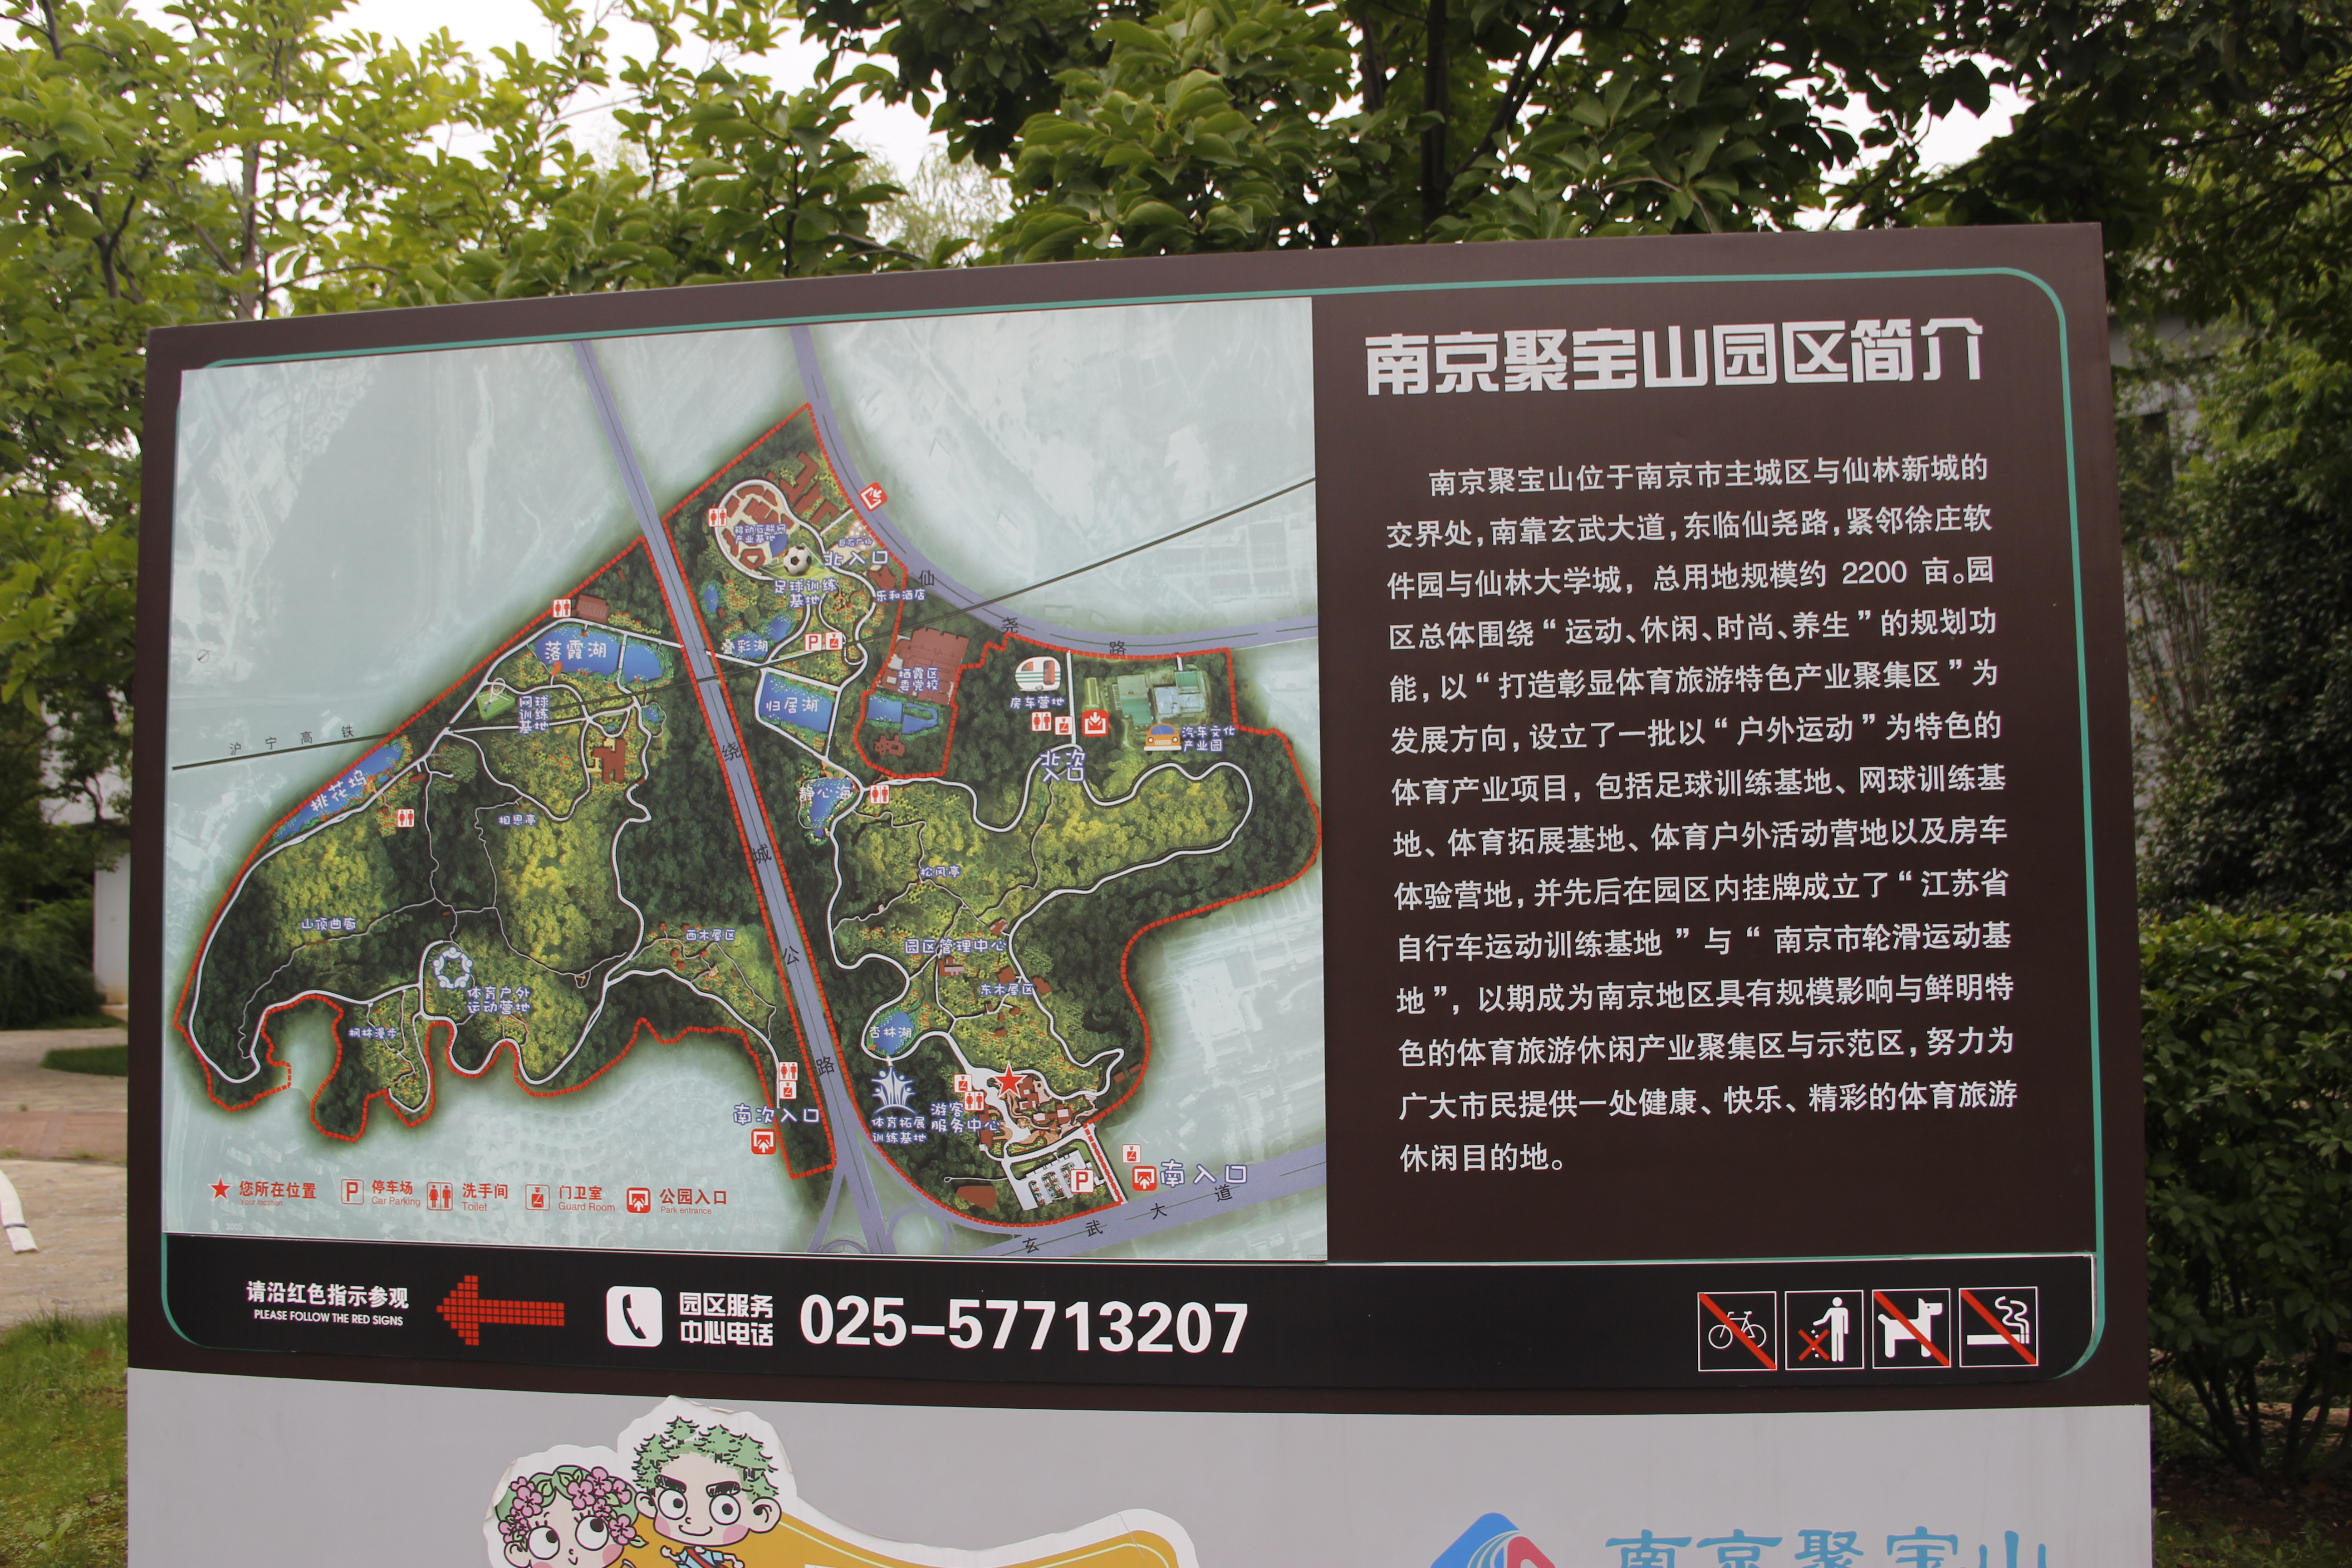 南京聚宝山公园将建成以绿色南京完善南京城市生态绿地系统为目标以